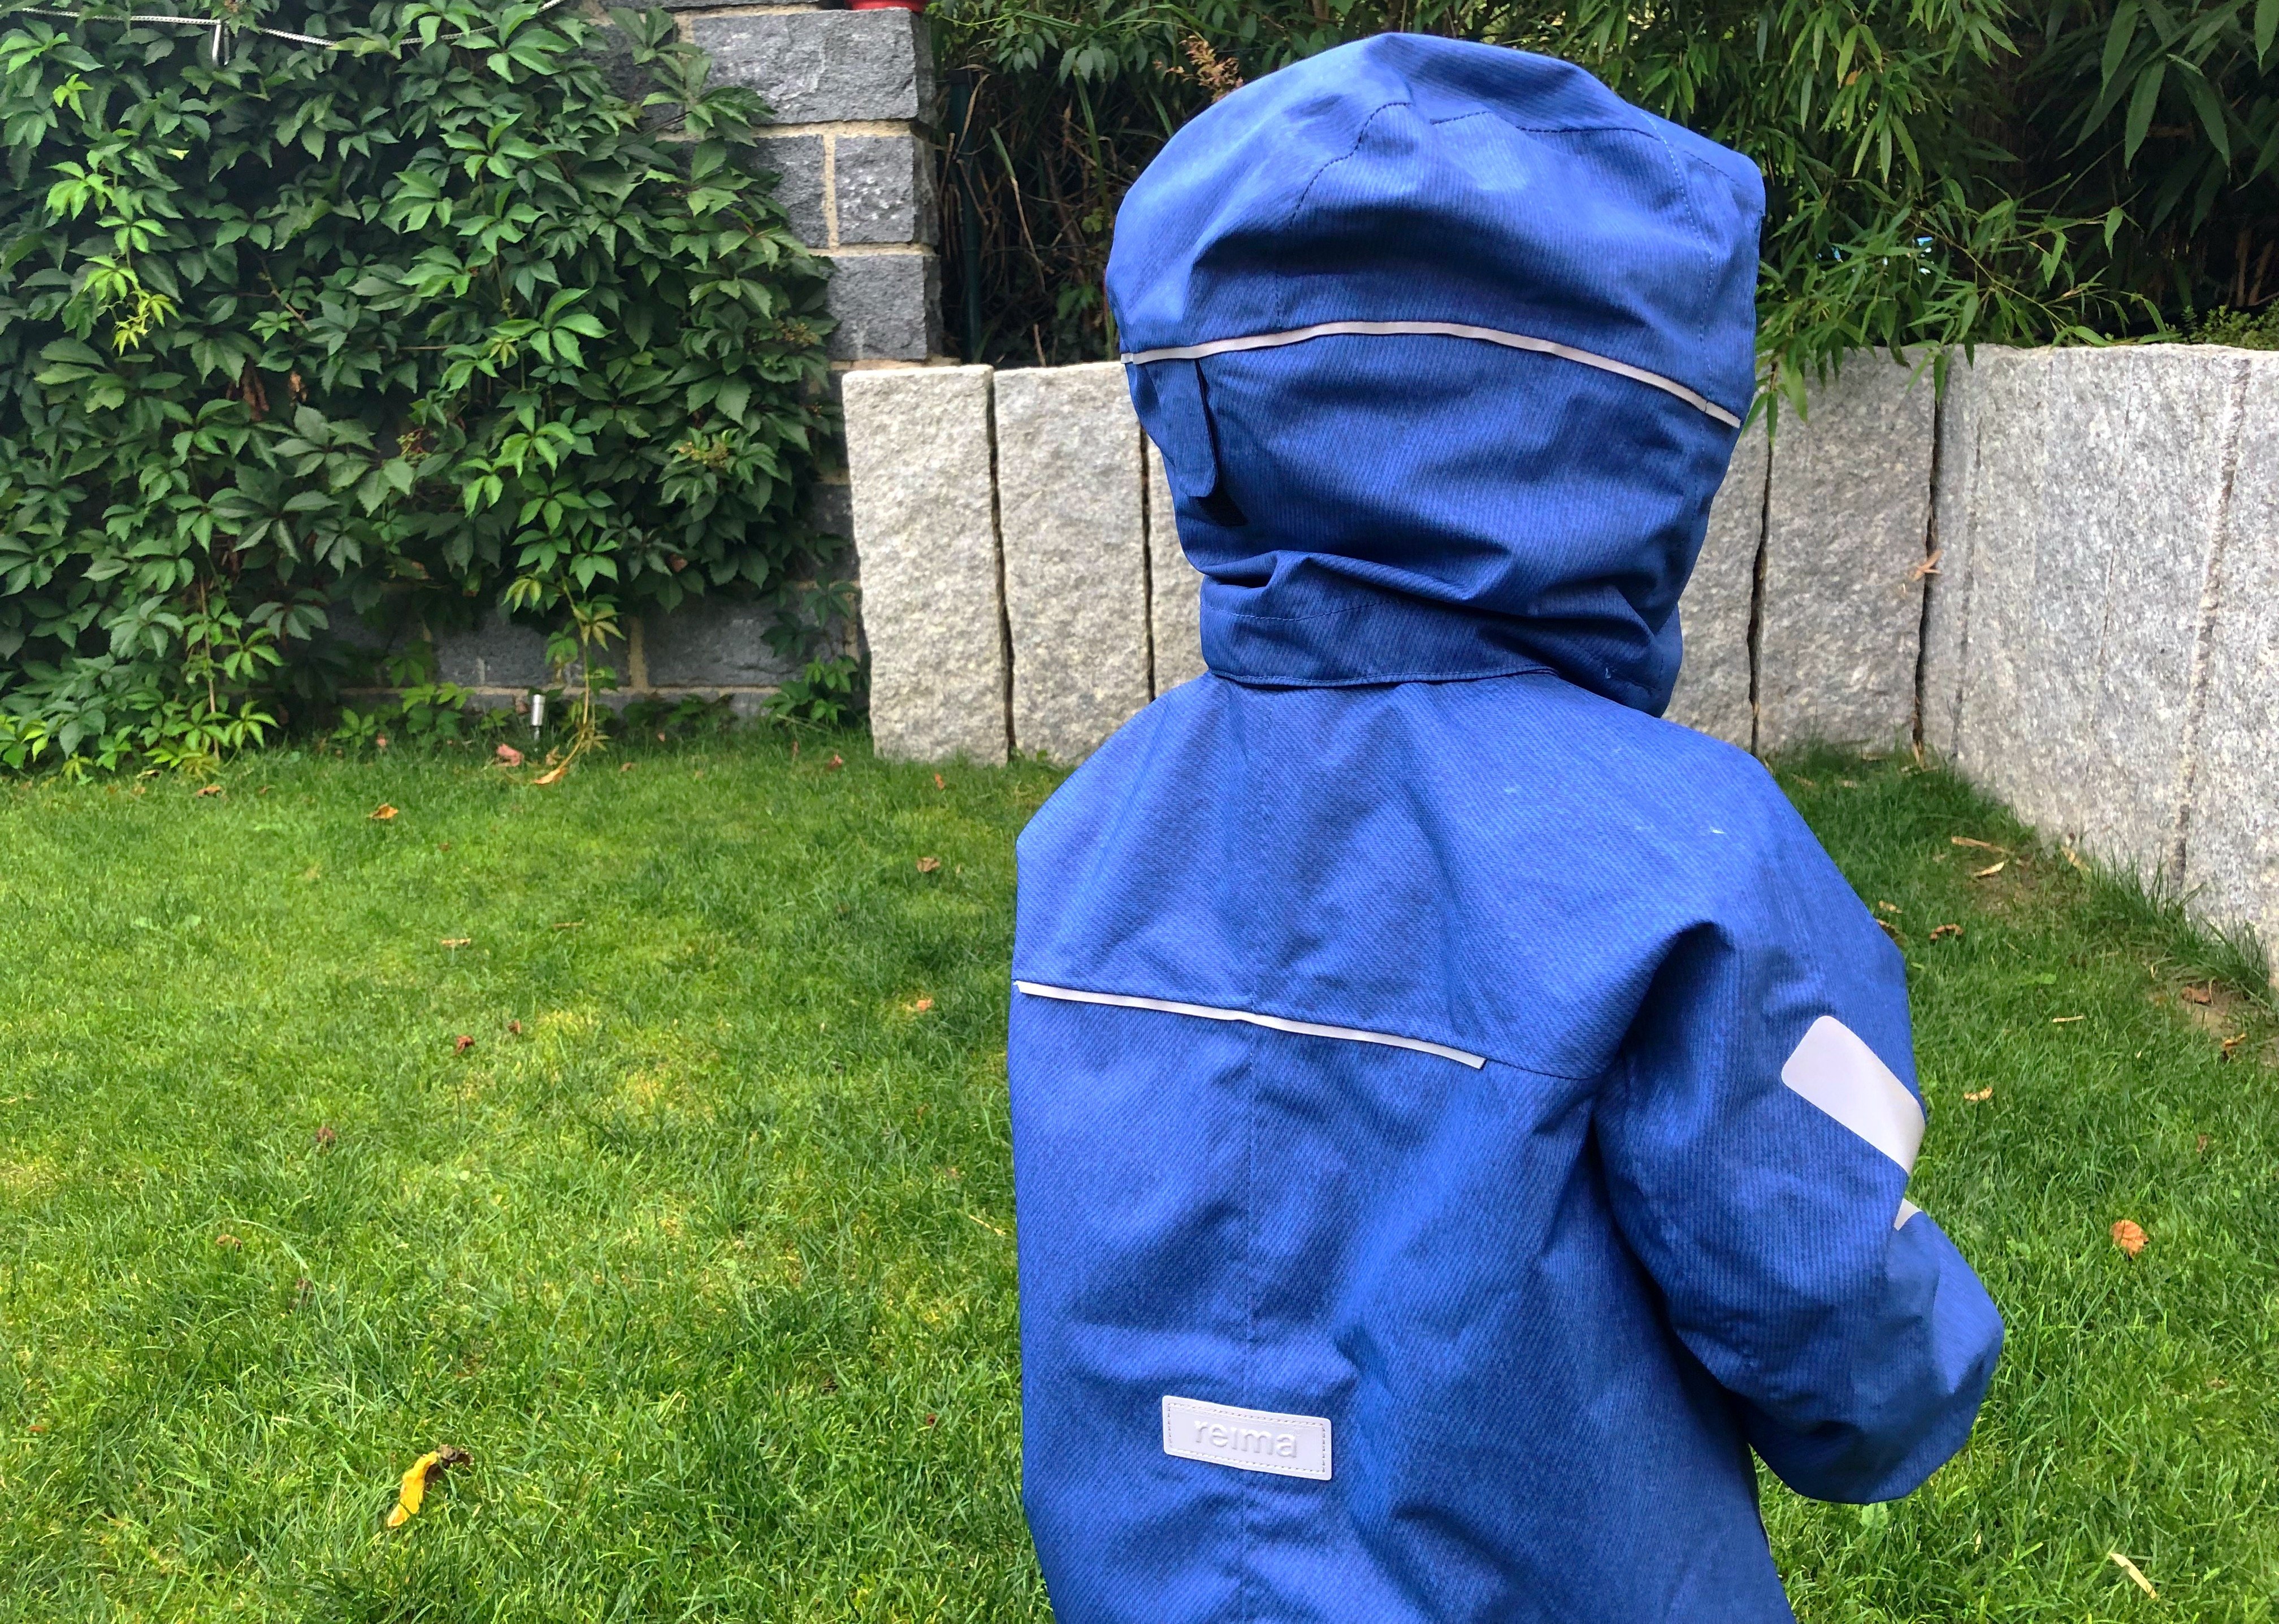 Foto 02.08.18 18 33 17 - Die richtige Kinderbekleidung bei Regen & Matsch